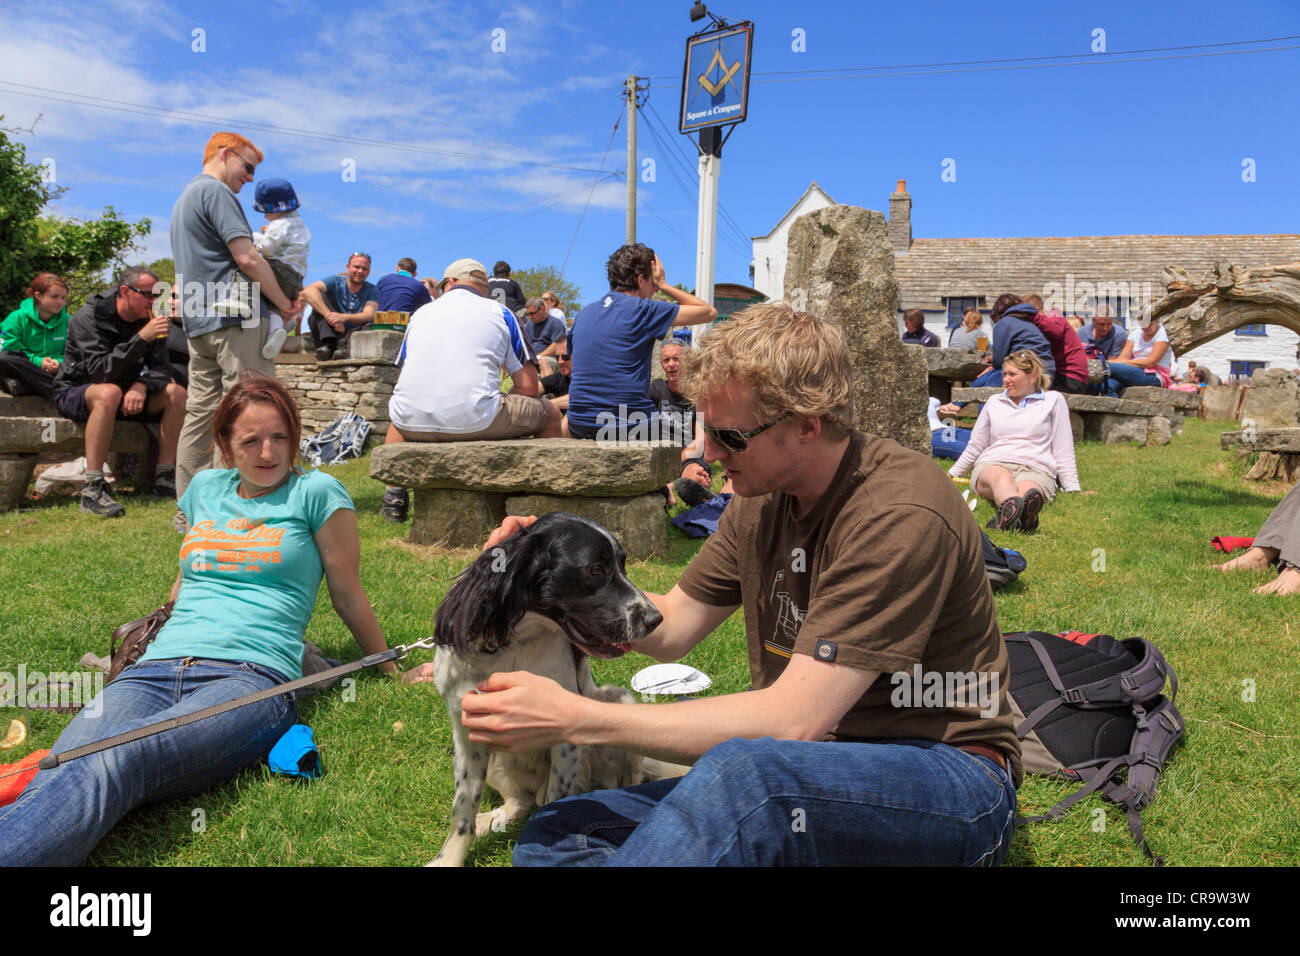 Authentische Szene mit Kunden sitzen in belebten Biergarten von Square und Compass Country Village Pub Lifestyle. Worth Matravers Purbeck Dorset UK Stockfoto